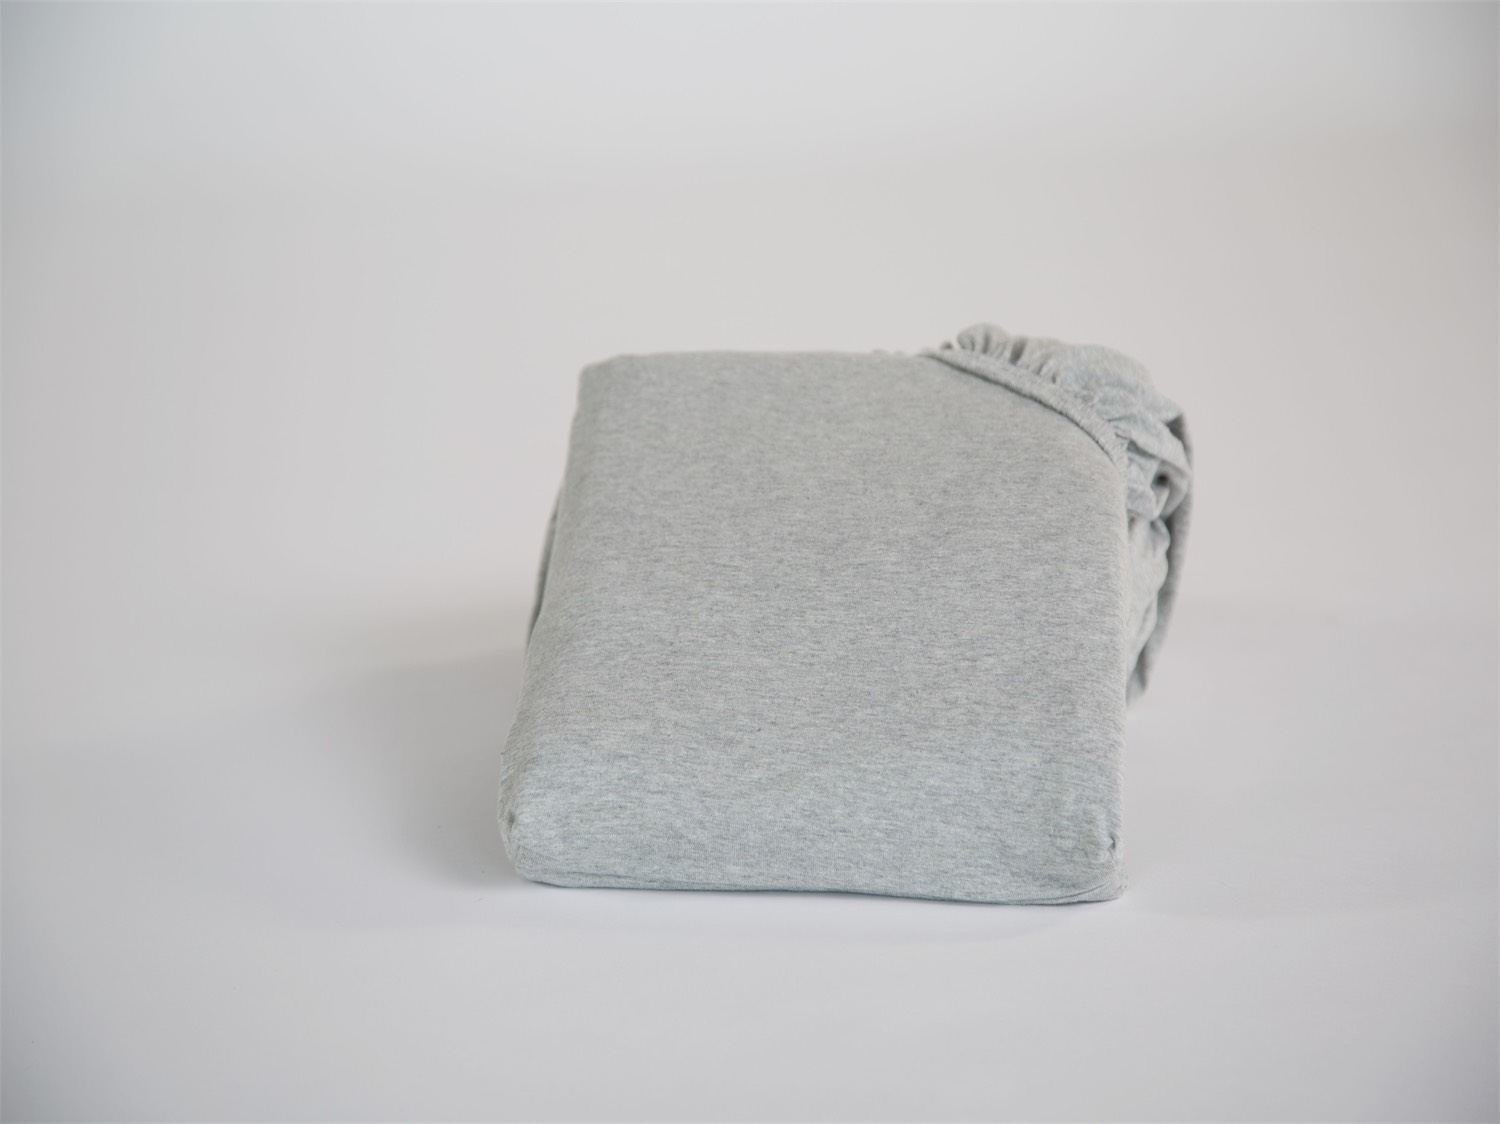 Image of Yumeko Hoeslaken jersey white grey 90x210x30 100% biologisch en fairtrade katoen, jersey katoen (gebreid)